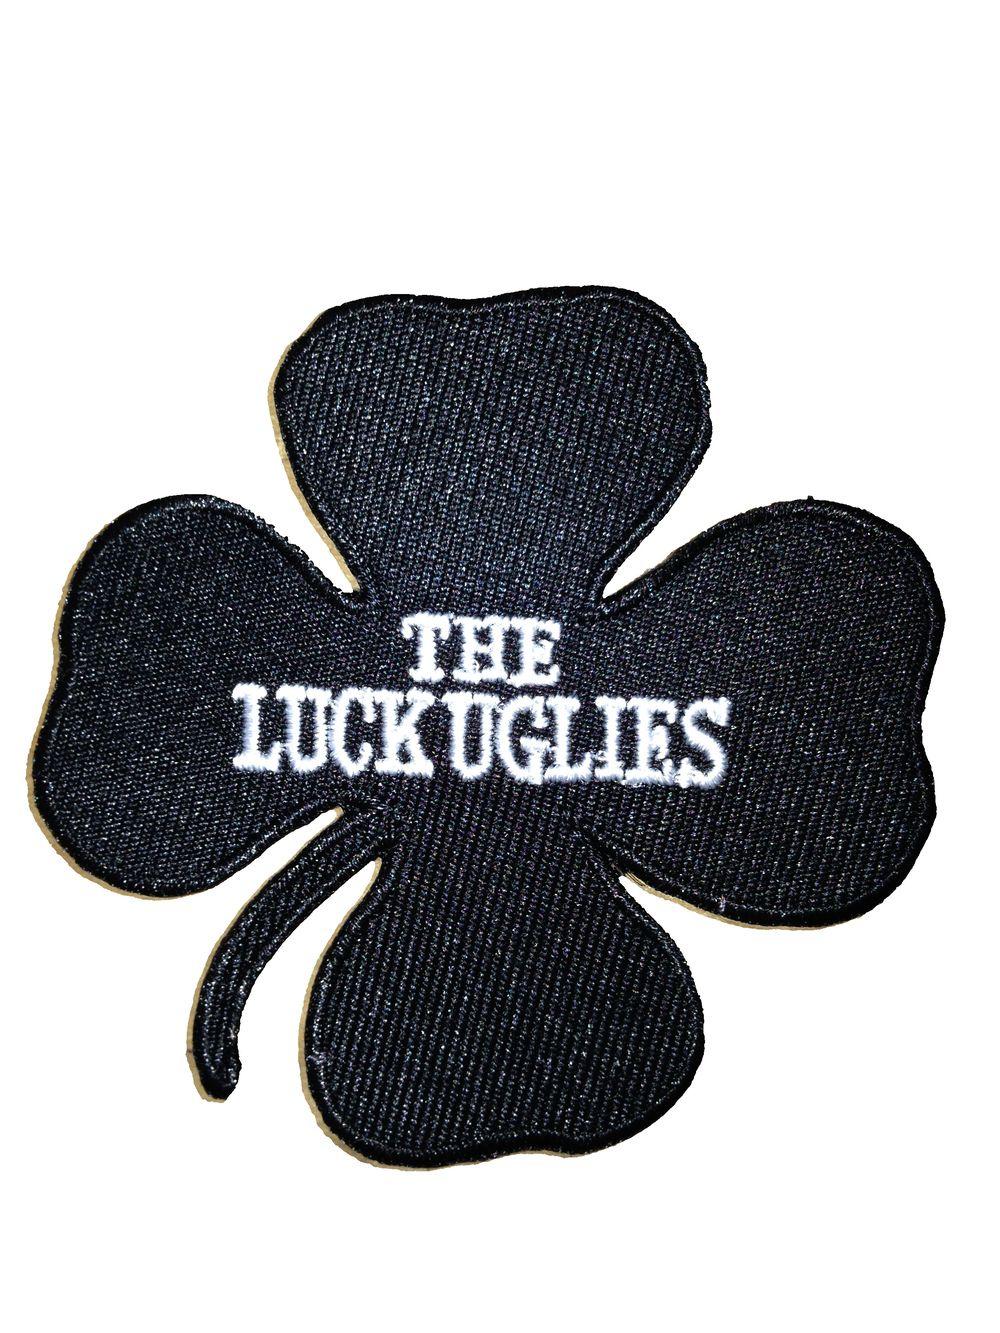 The Uglies Logo - Merchandise